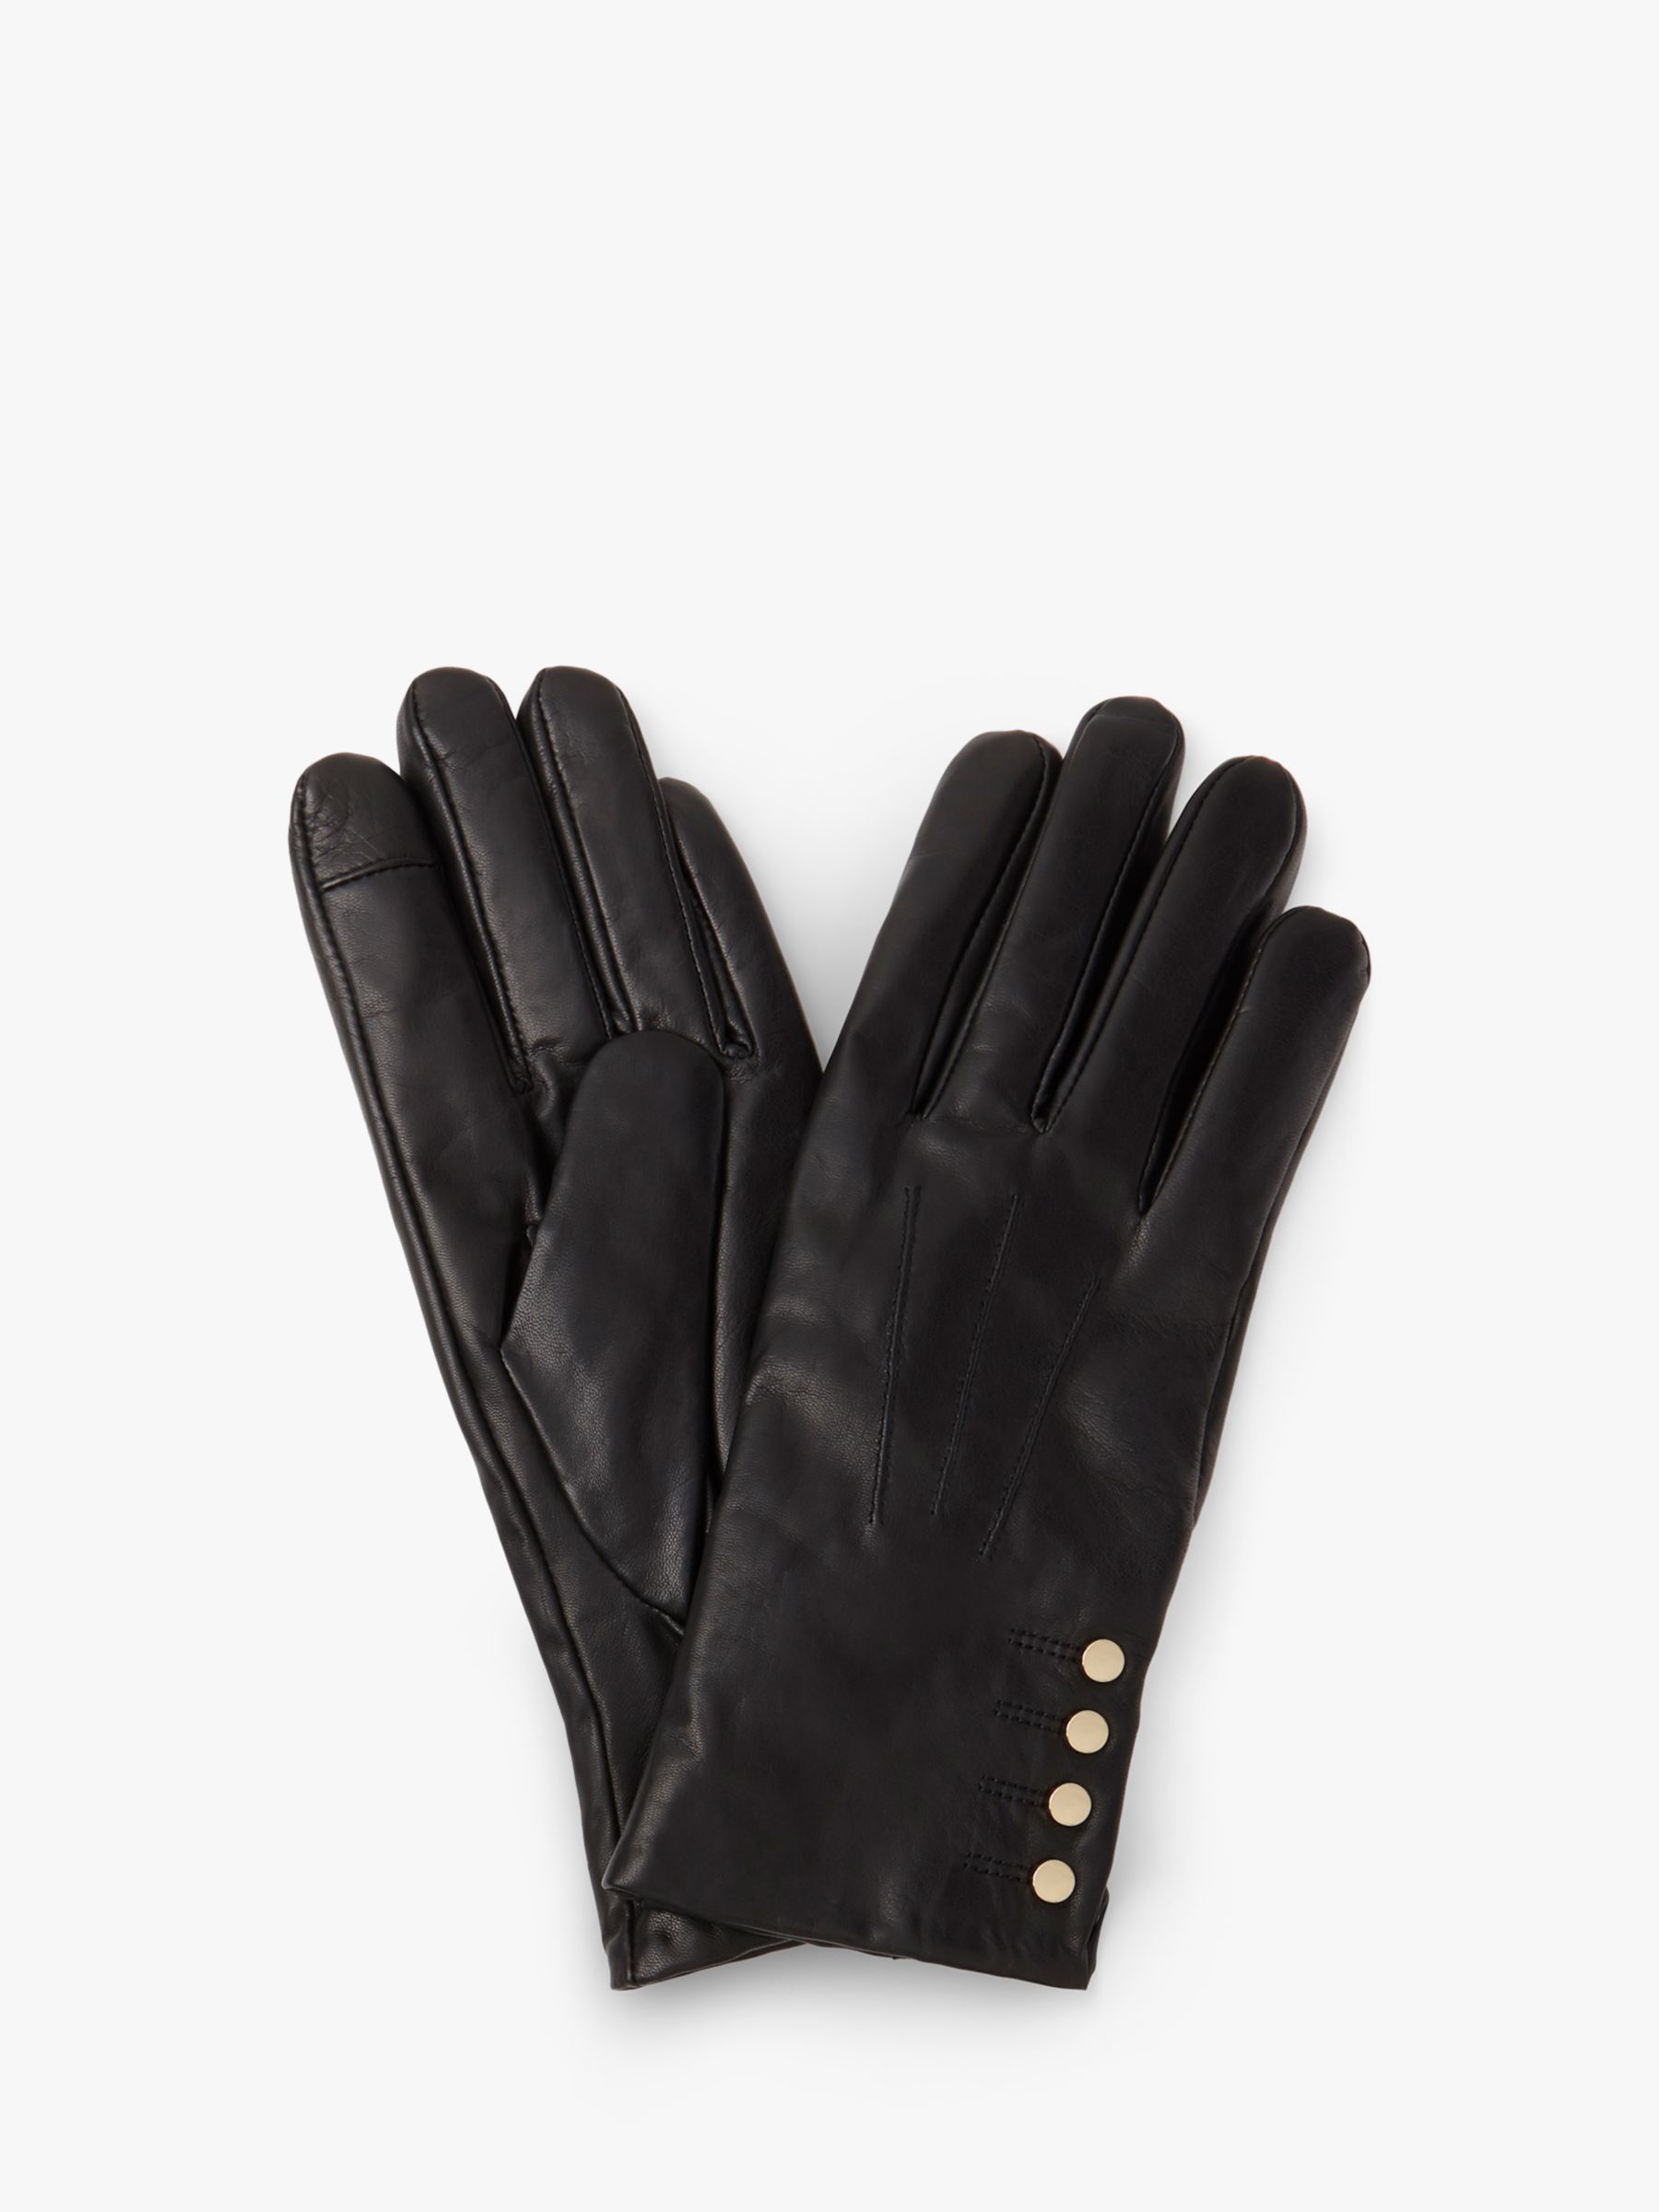 Hobbs Sienna Button Cuff Leather Gloves